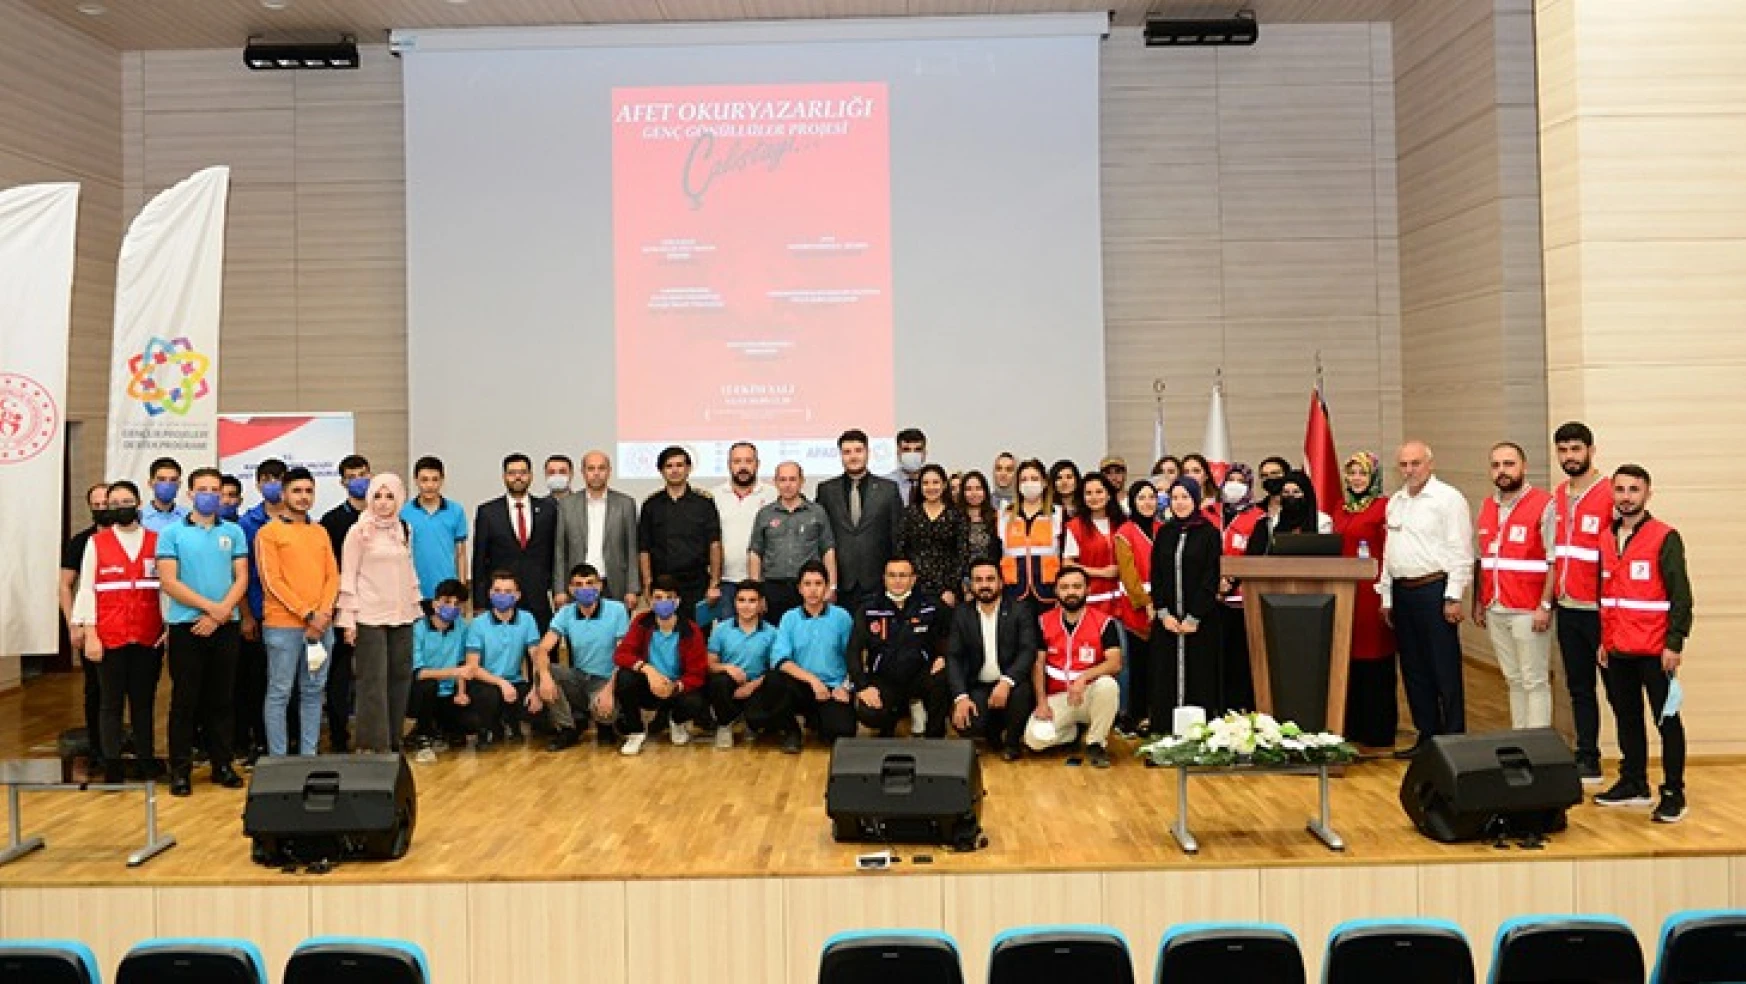 Kahramanmaraş'ta afet okuryazarlığı genç gönüllüler projesi çalıştayı gerçekleştirildi